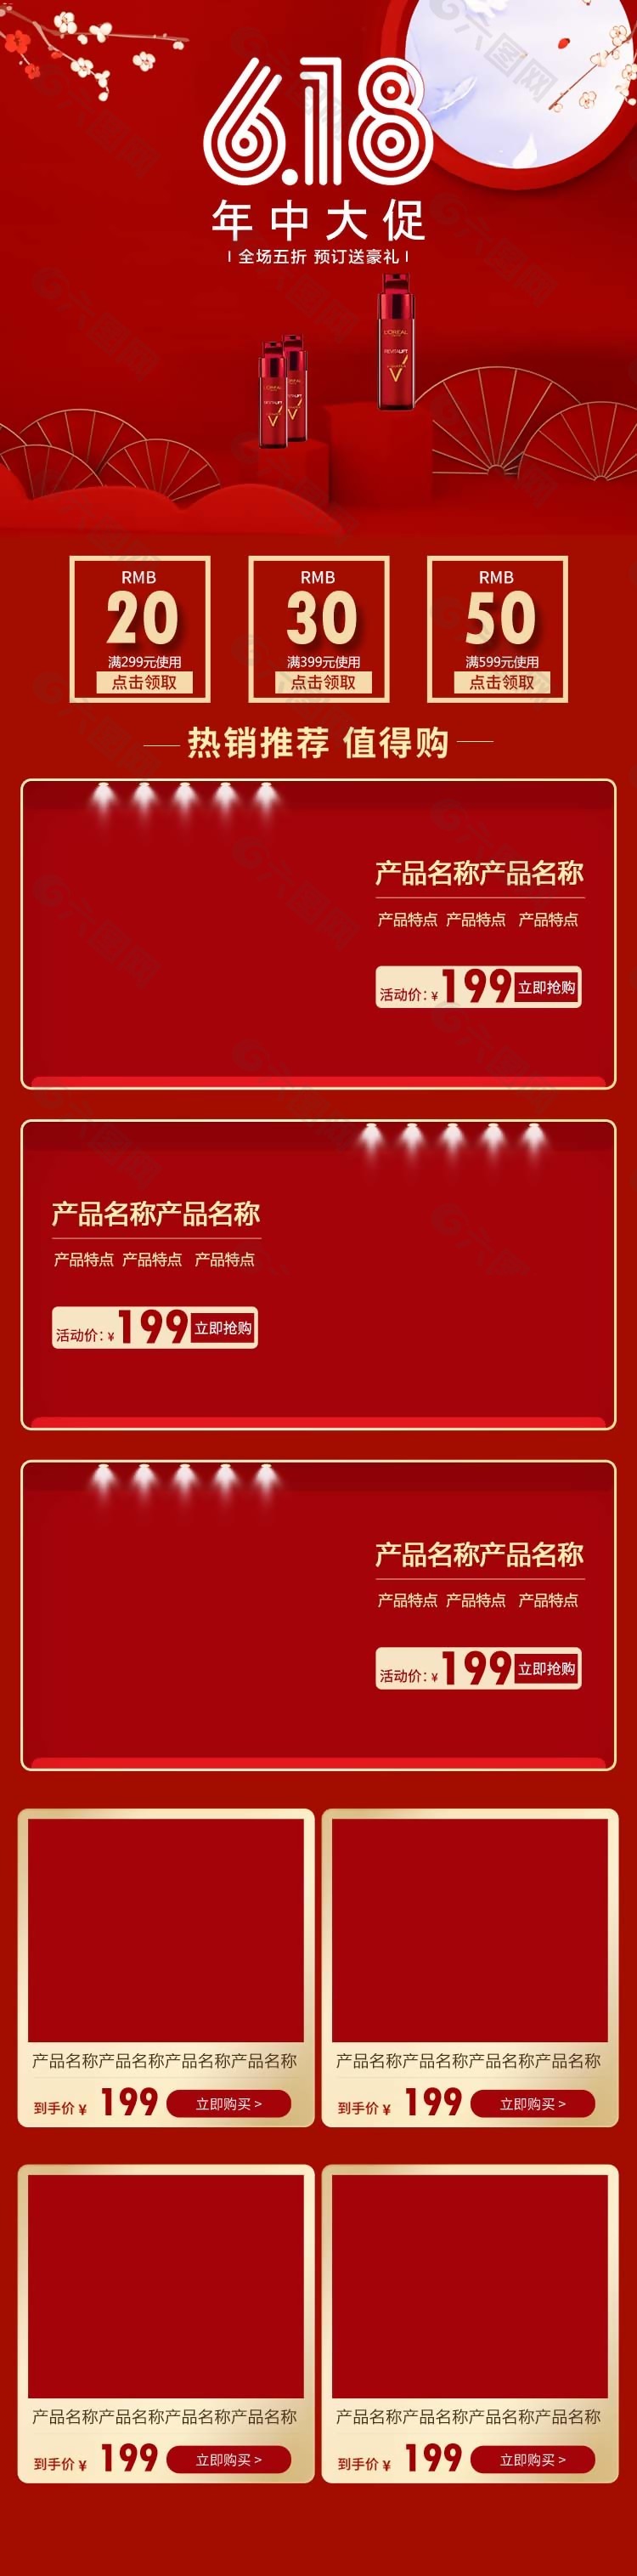 618年中大促中国红淘宝店铺PC端模板